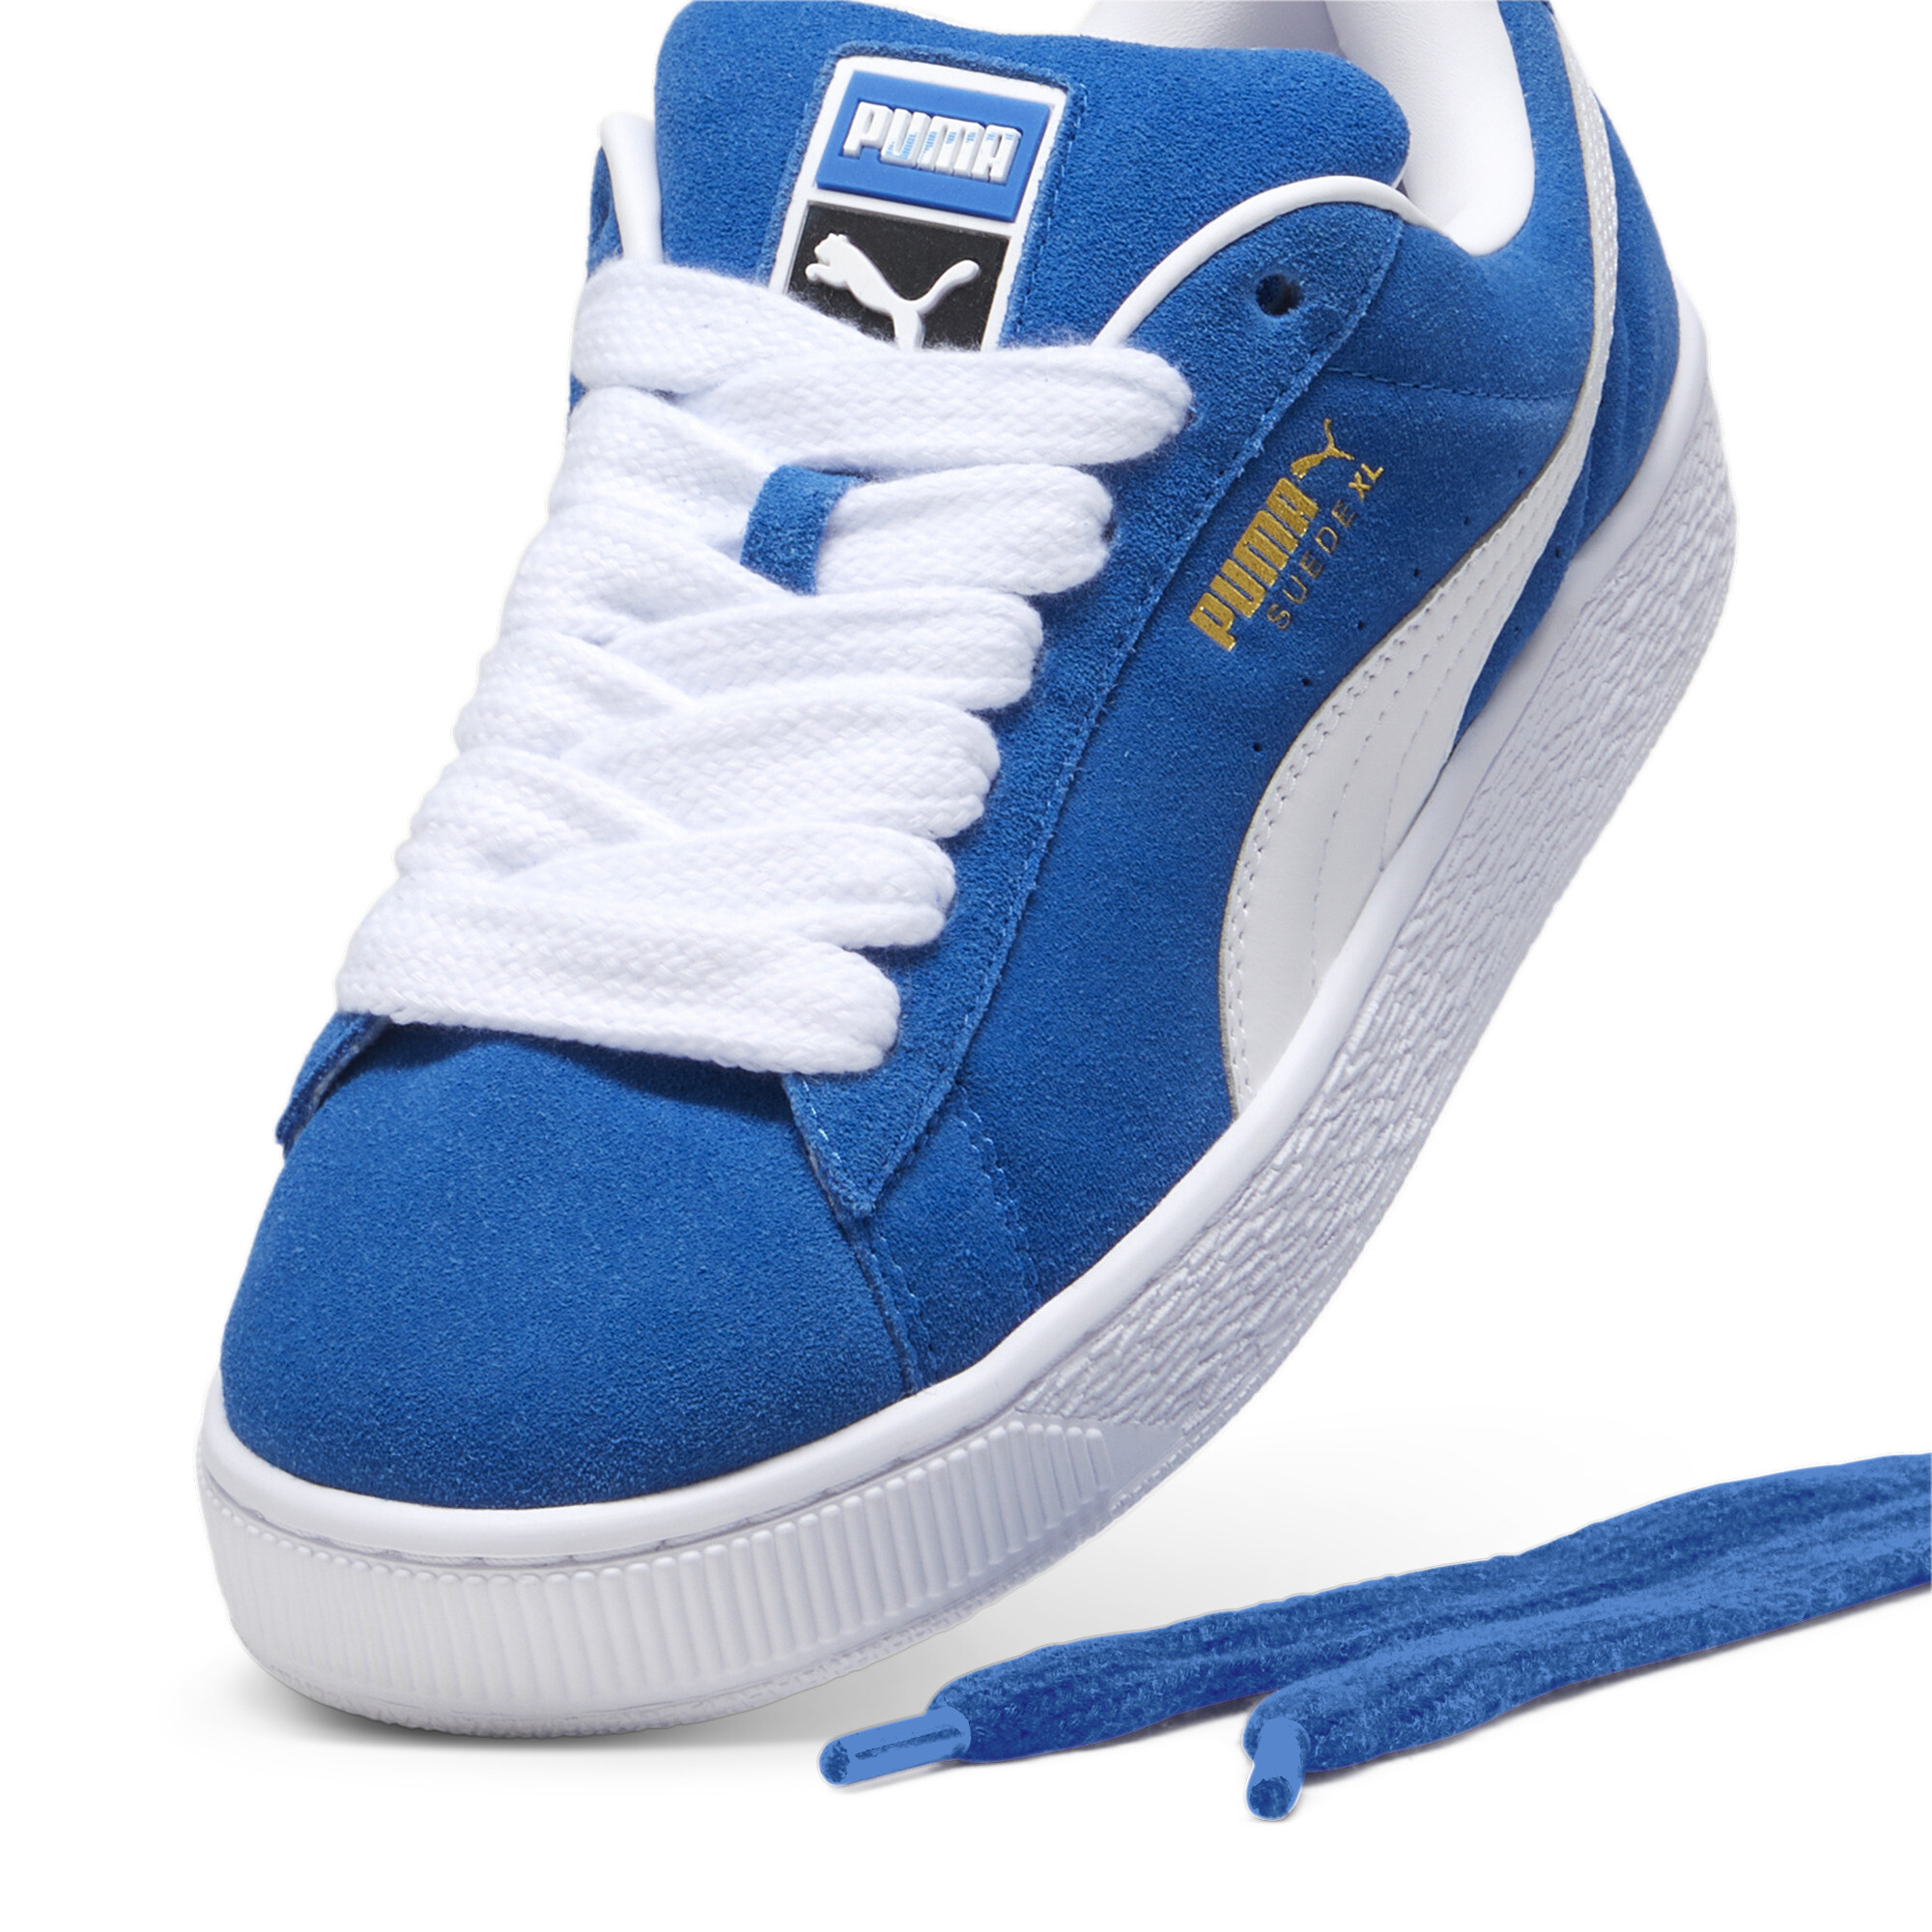 Unisex PUMA Suede XL Sneakers In Blue, Size EU 45